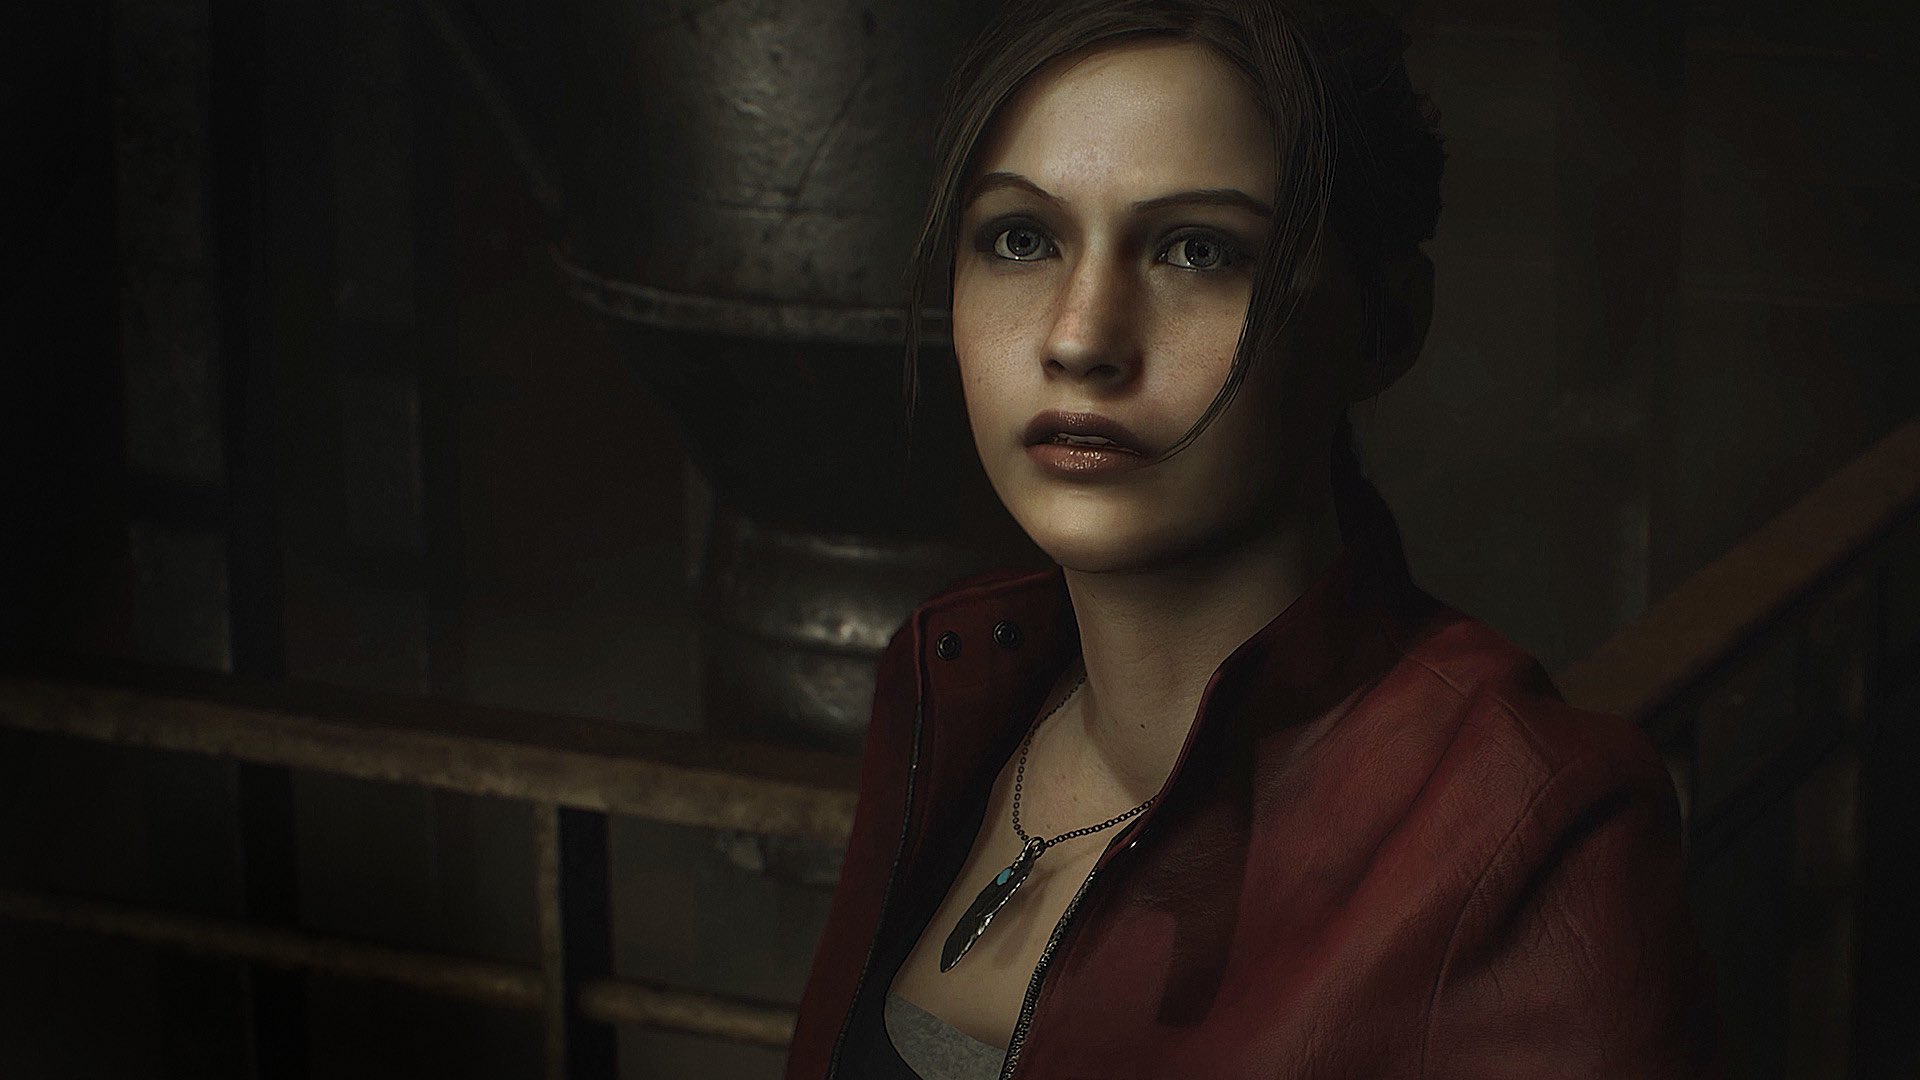 ARTPOP's Revenge on X: Resident Evil Degeneration Claire Redfield